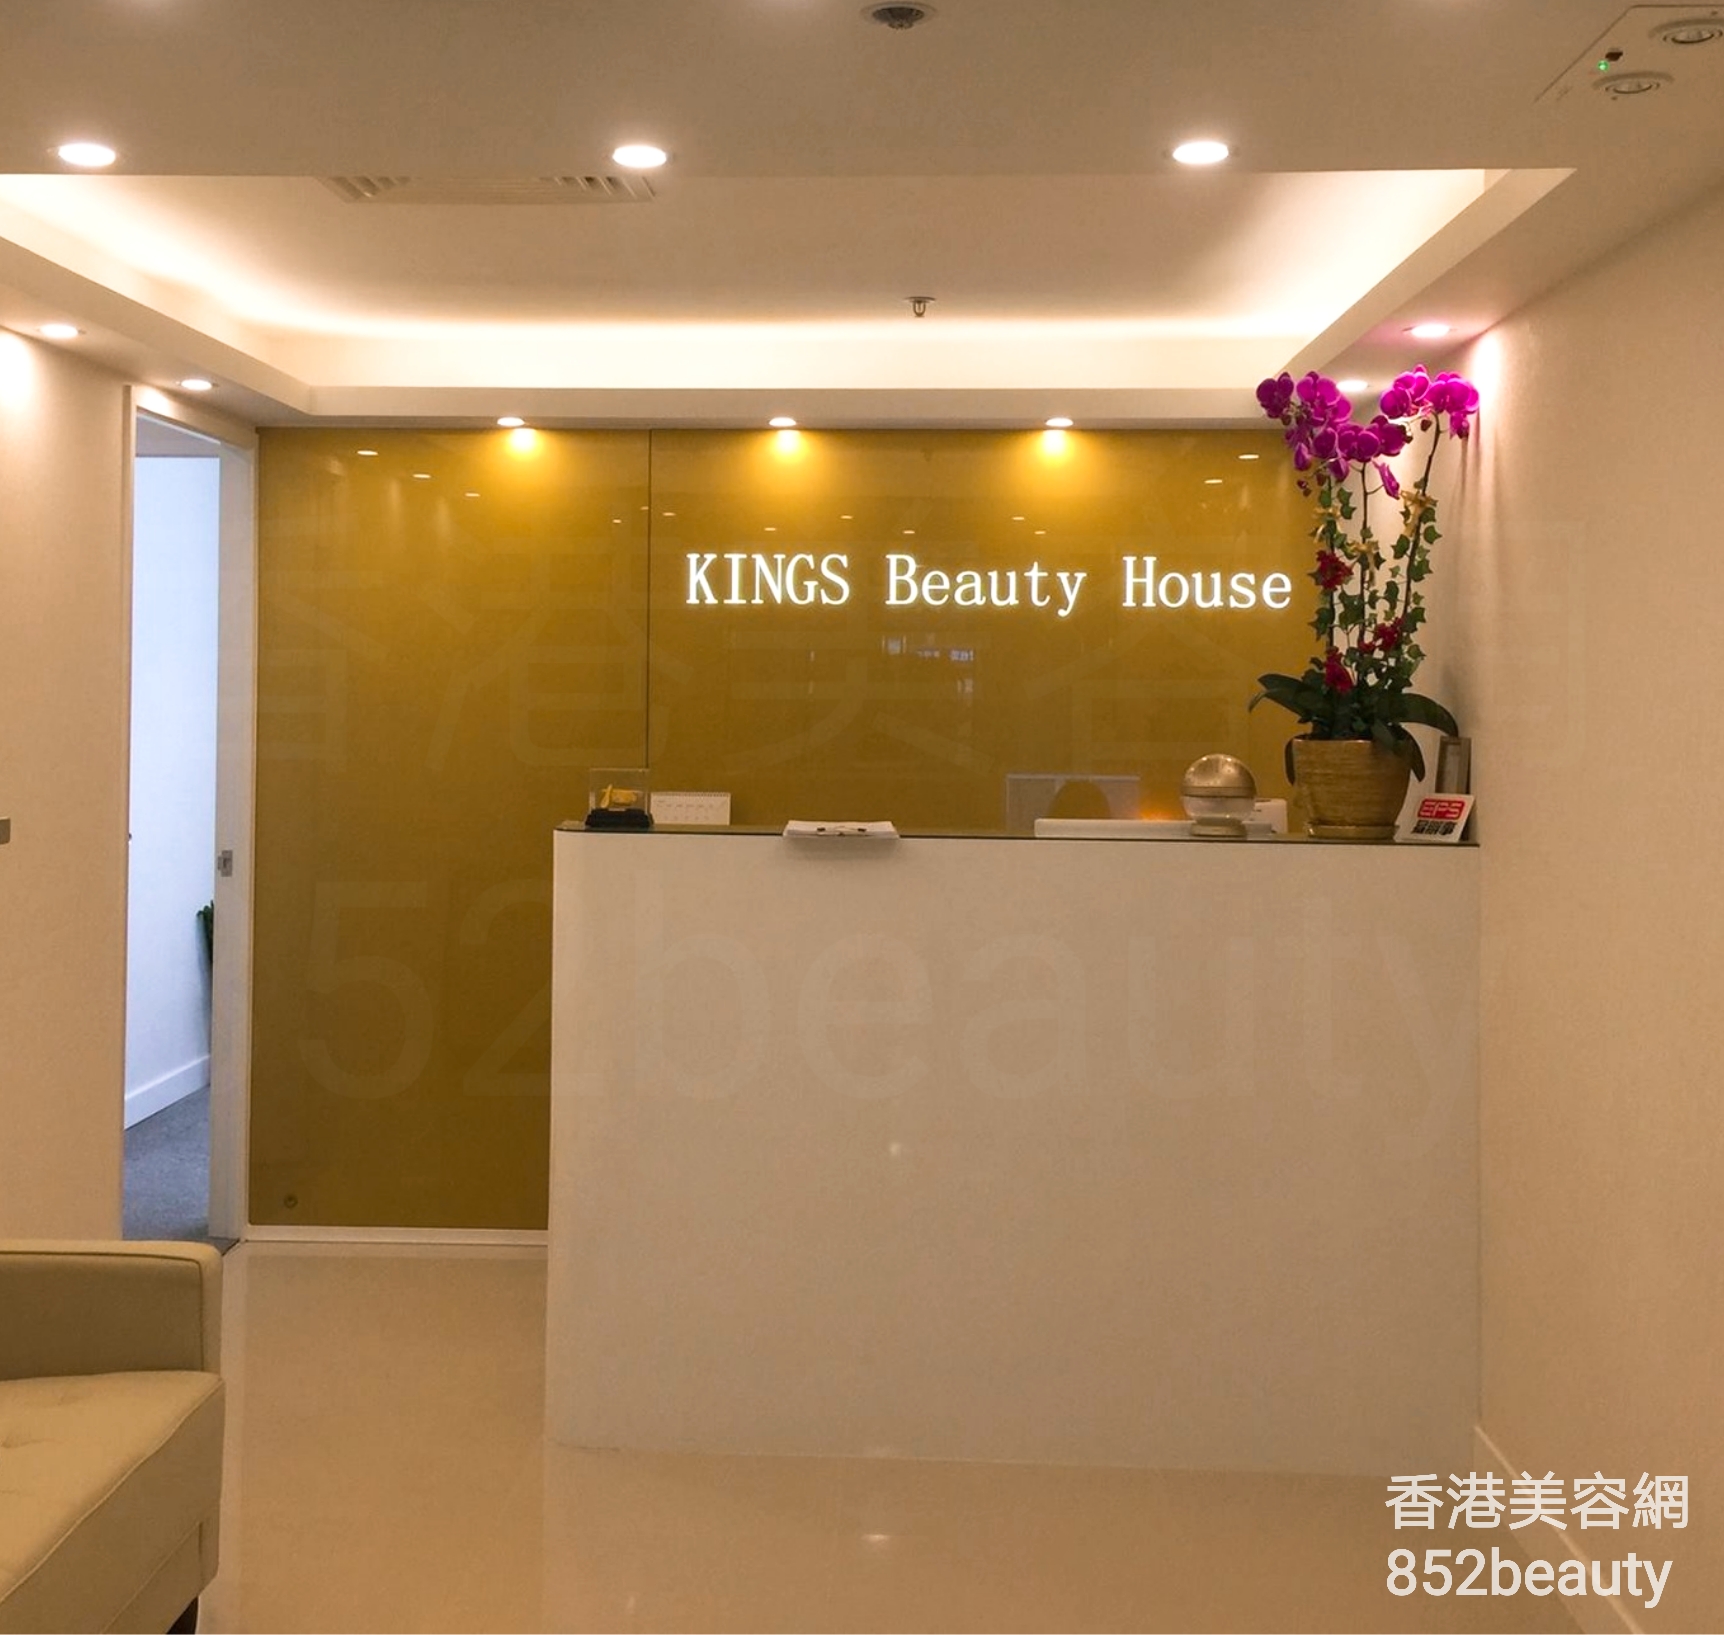 香港美容網 Hong Kong Beauty Salon 美容院 / 美容師: KINGS Beauty House (雅蘭中心 本店)